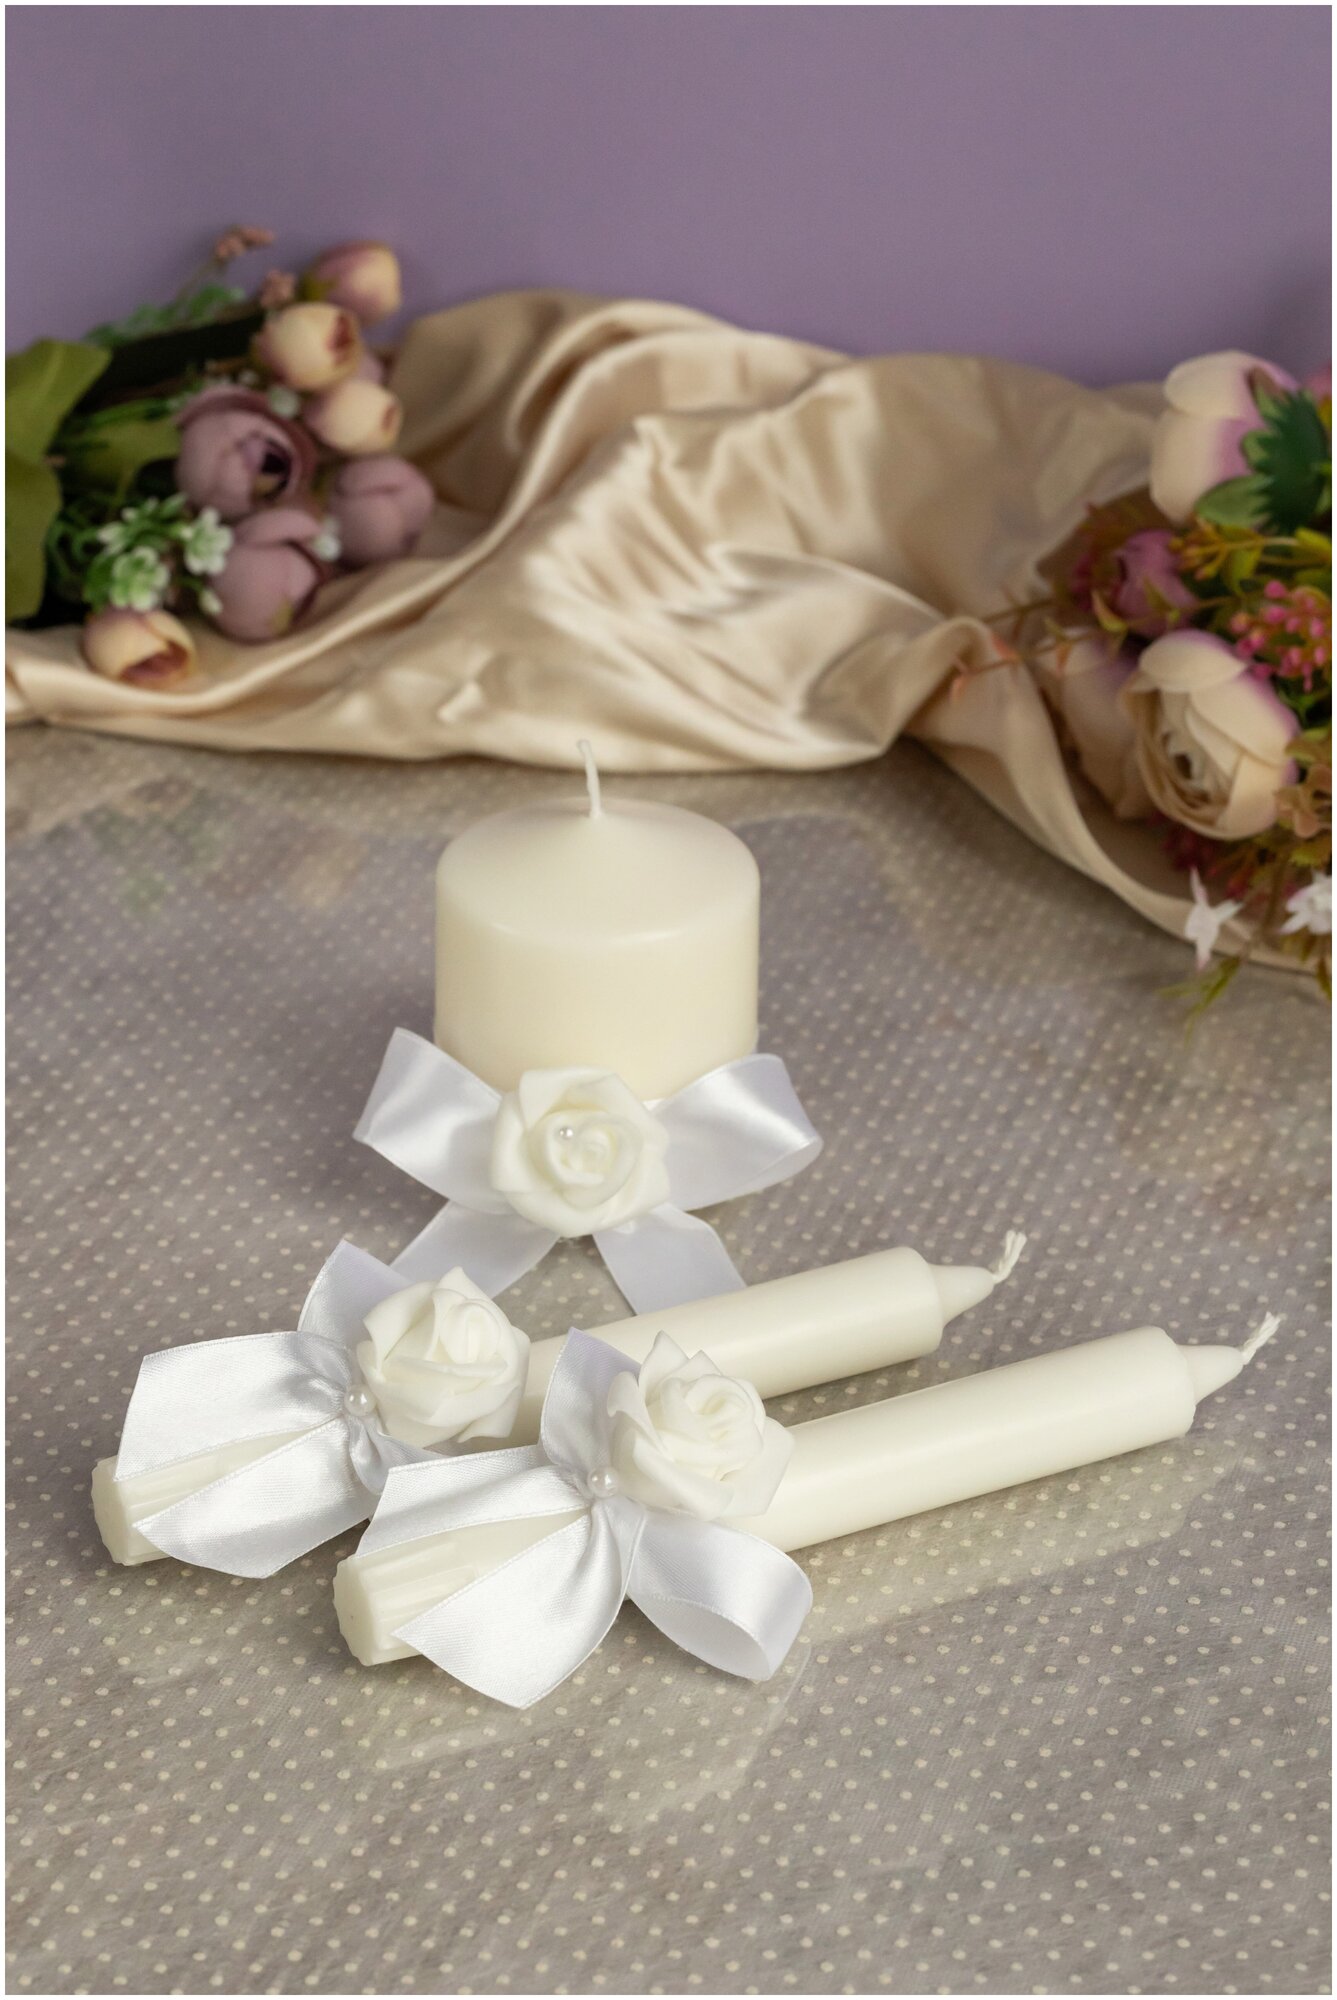 Набор свечей для домашнего очага и украшения интерьера "Свадебный букет" с латексными розами и атласными бантами белого цвета